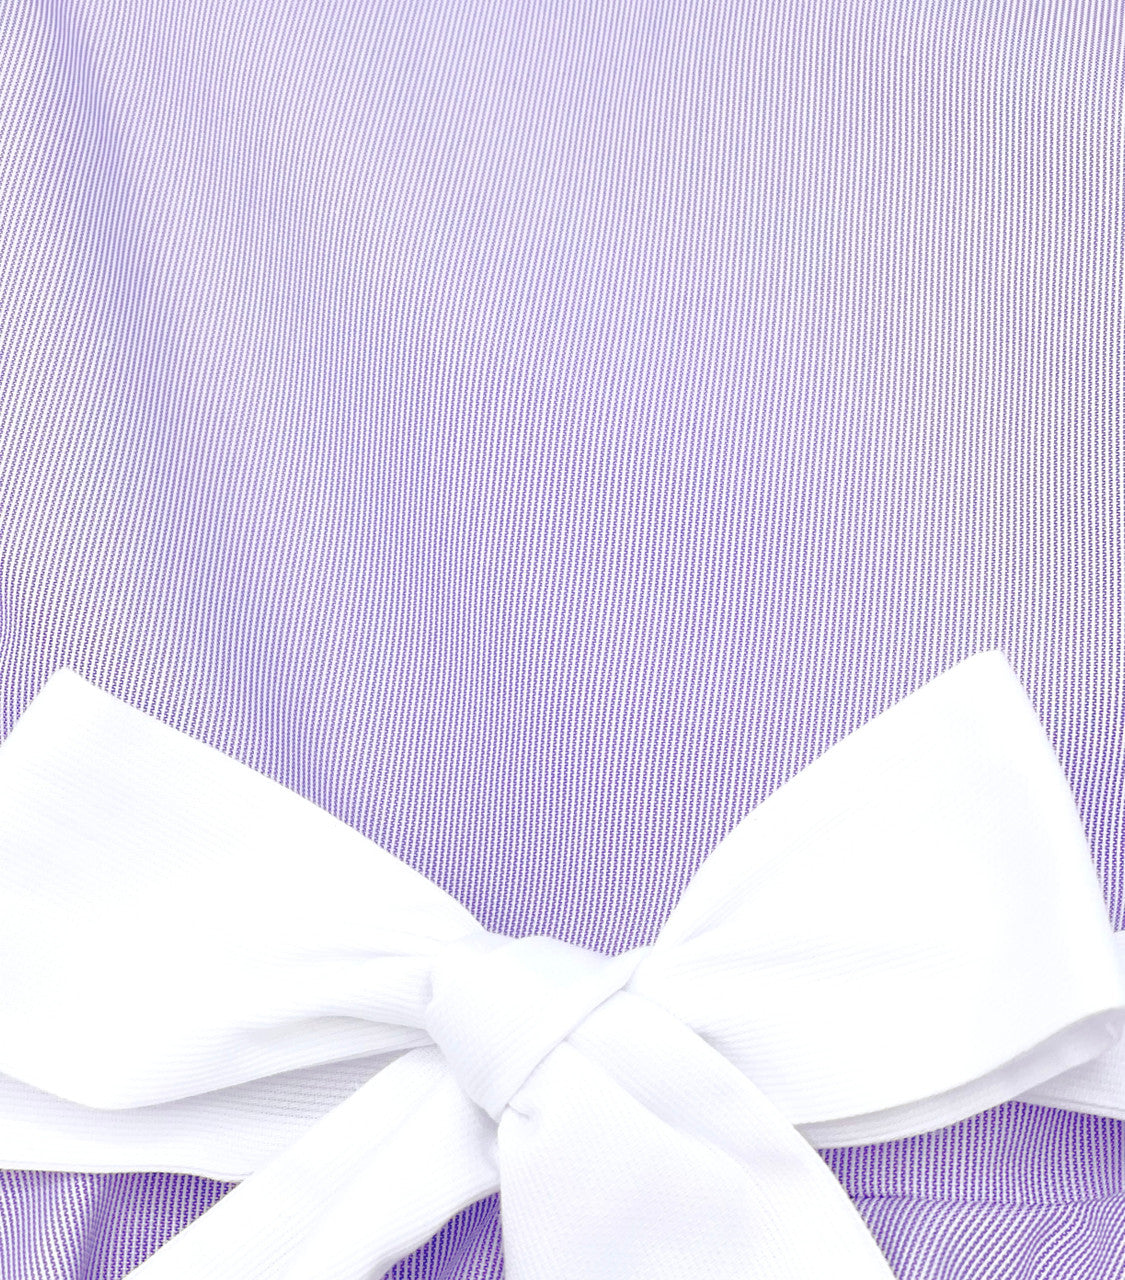 Lilac Pincord Twirl Dress